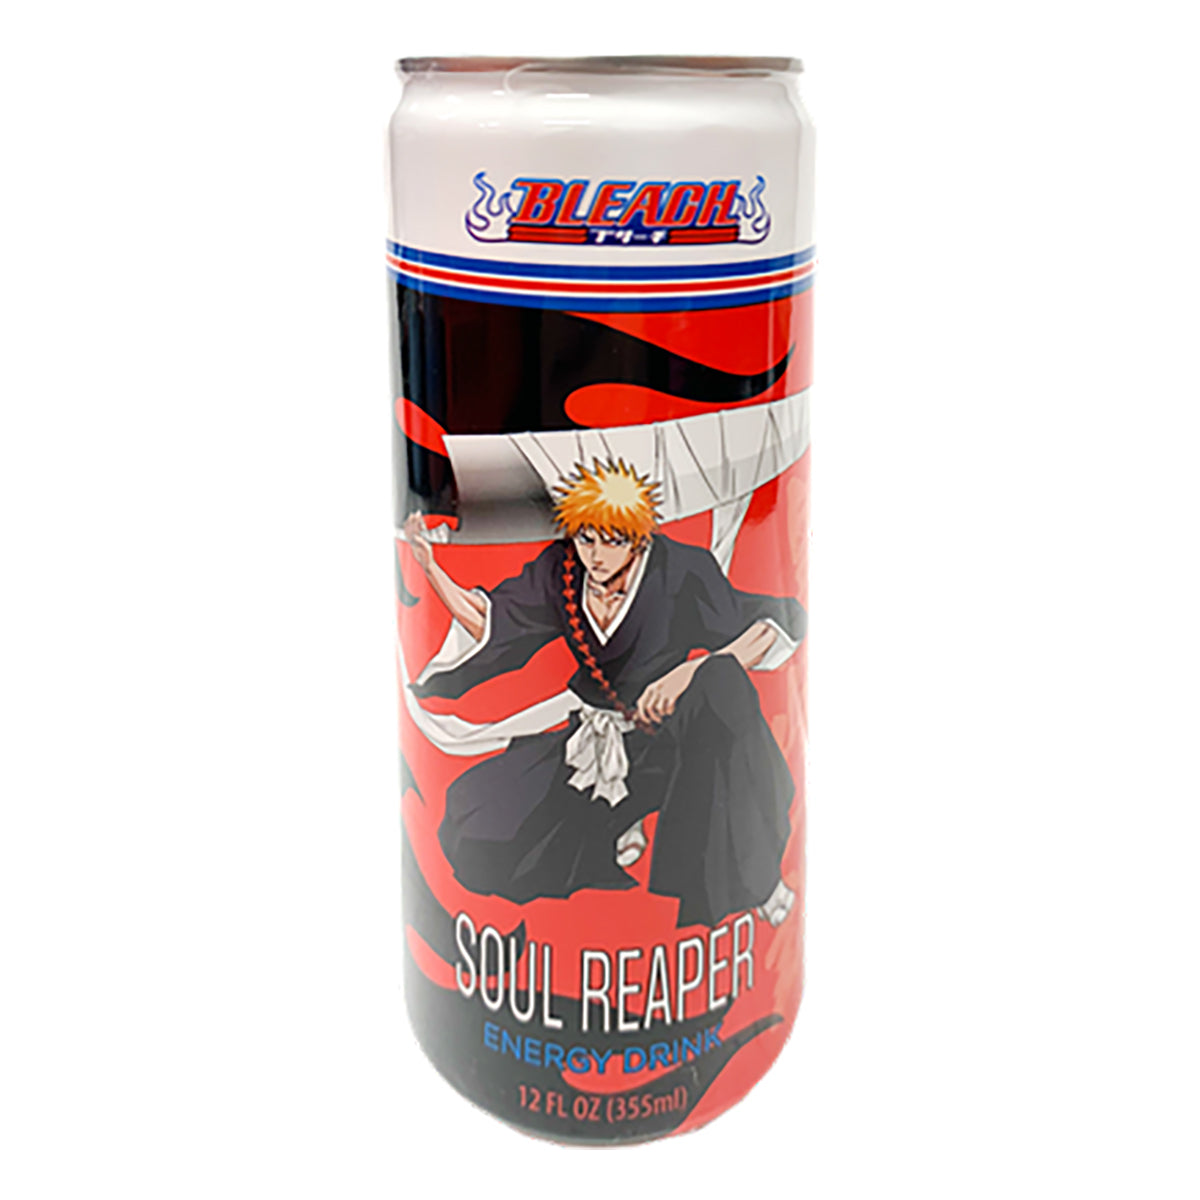 bleach soul reaper energy drink - 12fl oz